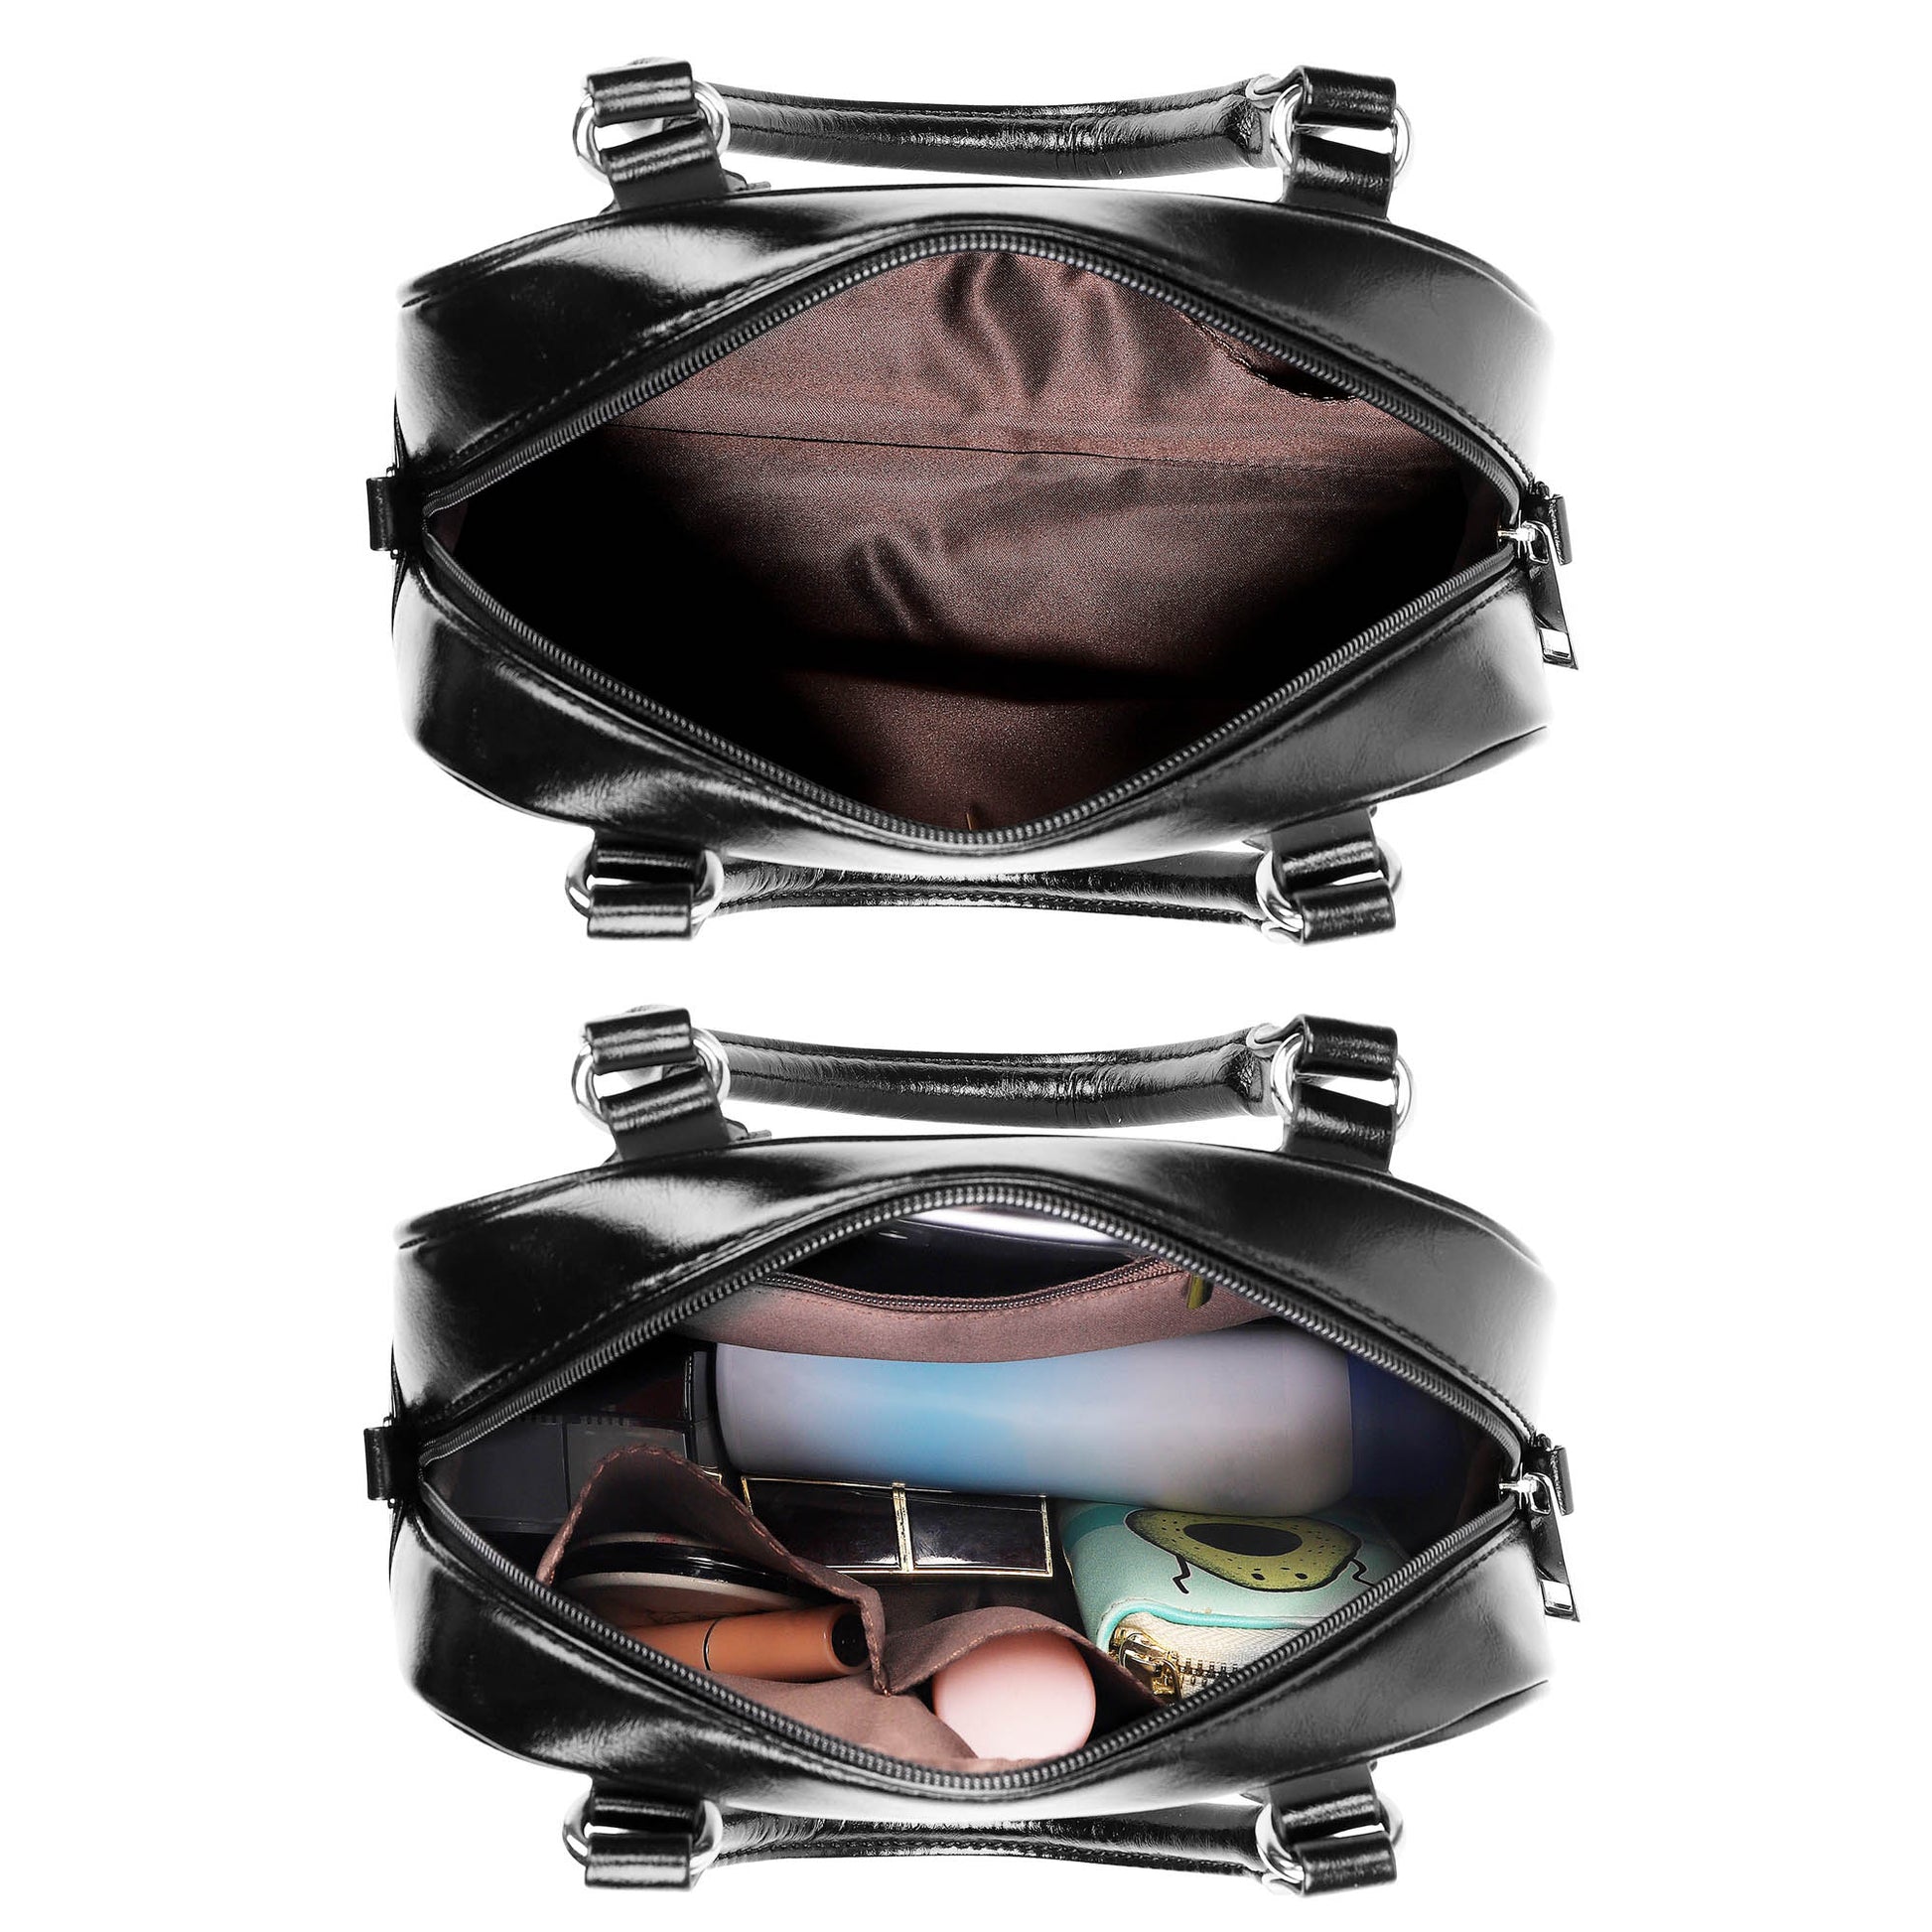 Miller Tartan Shoulder Handbags - Tartanvibesclothing